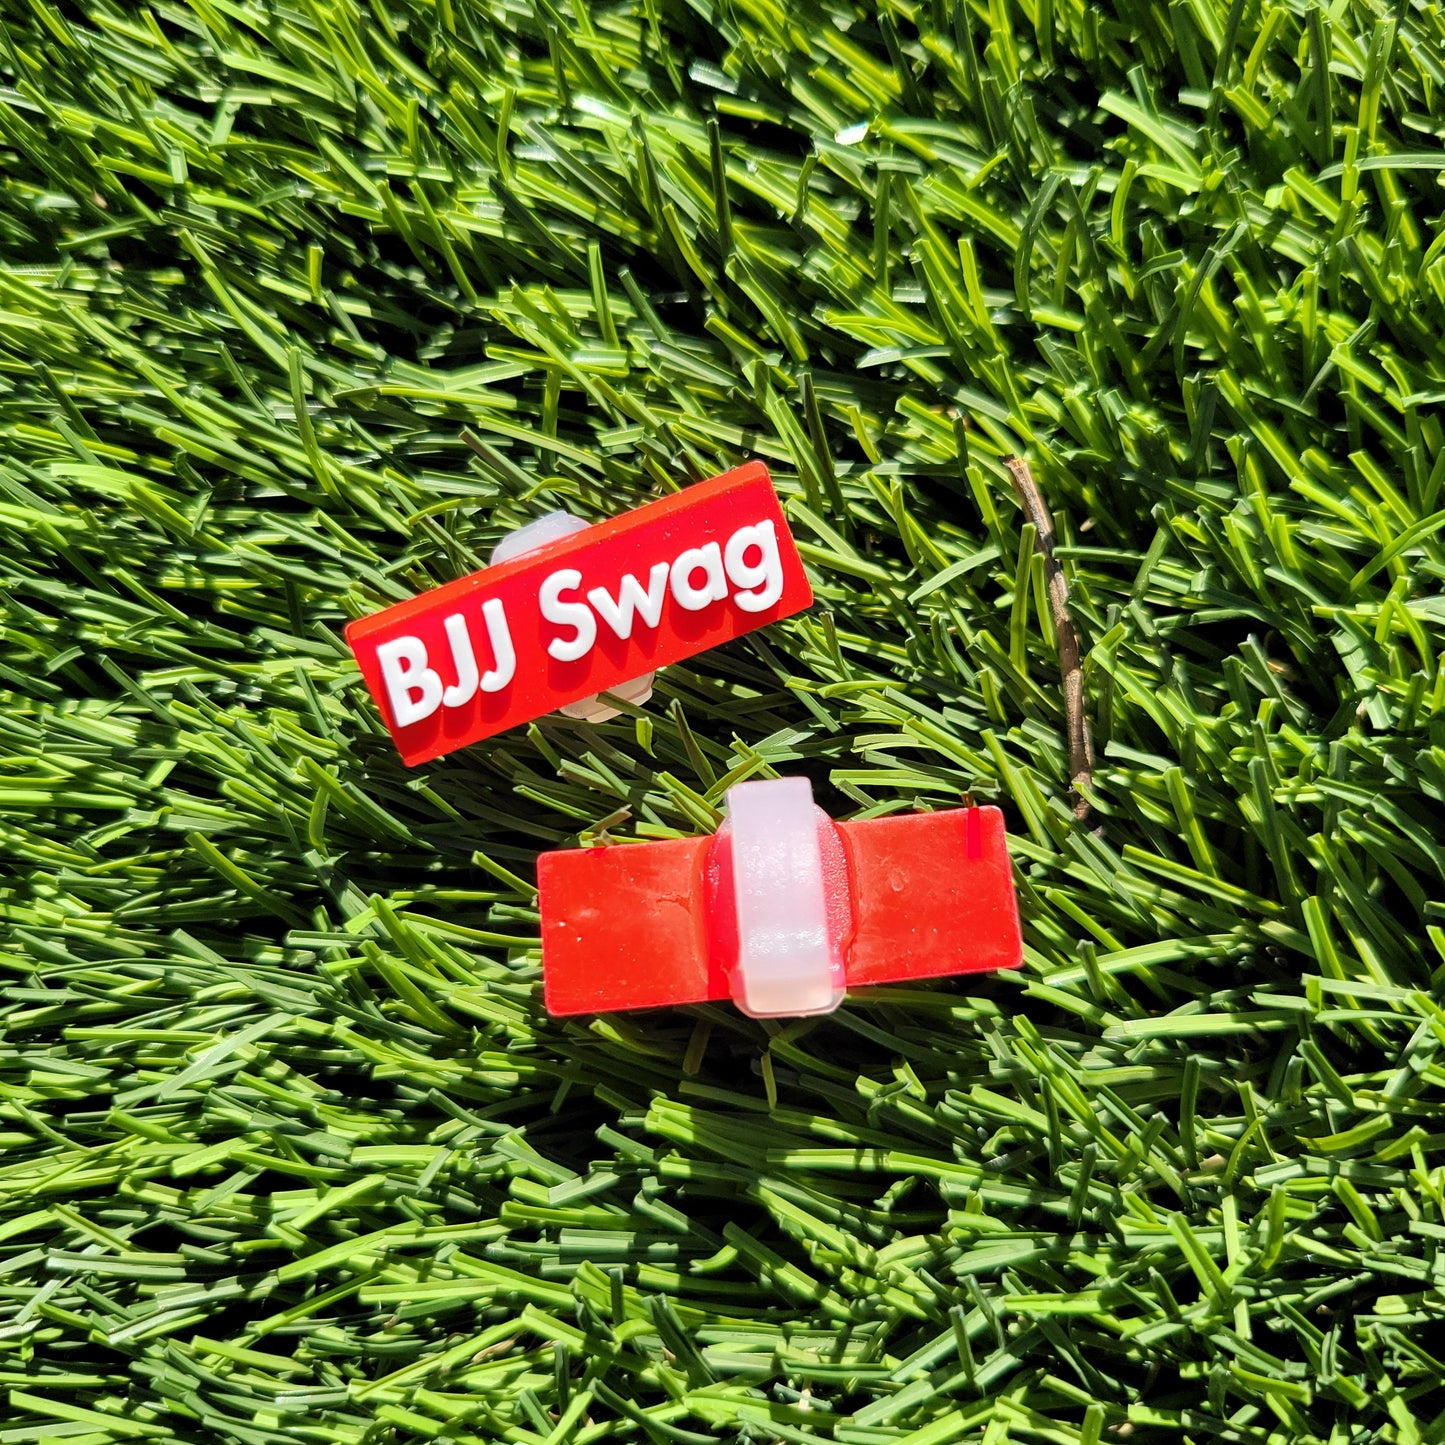 BJJ Swag Logo Sneaker (Shoe Lace) Charms - BJJ Swag